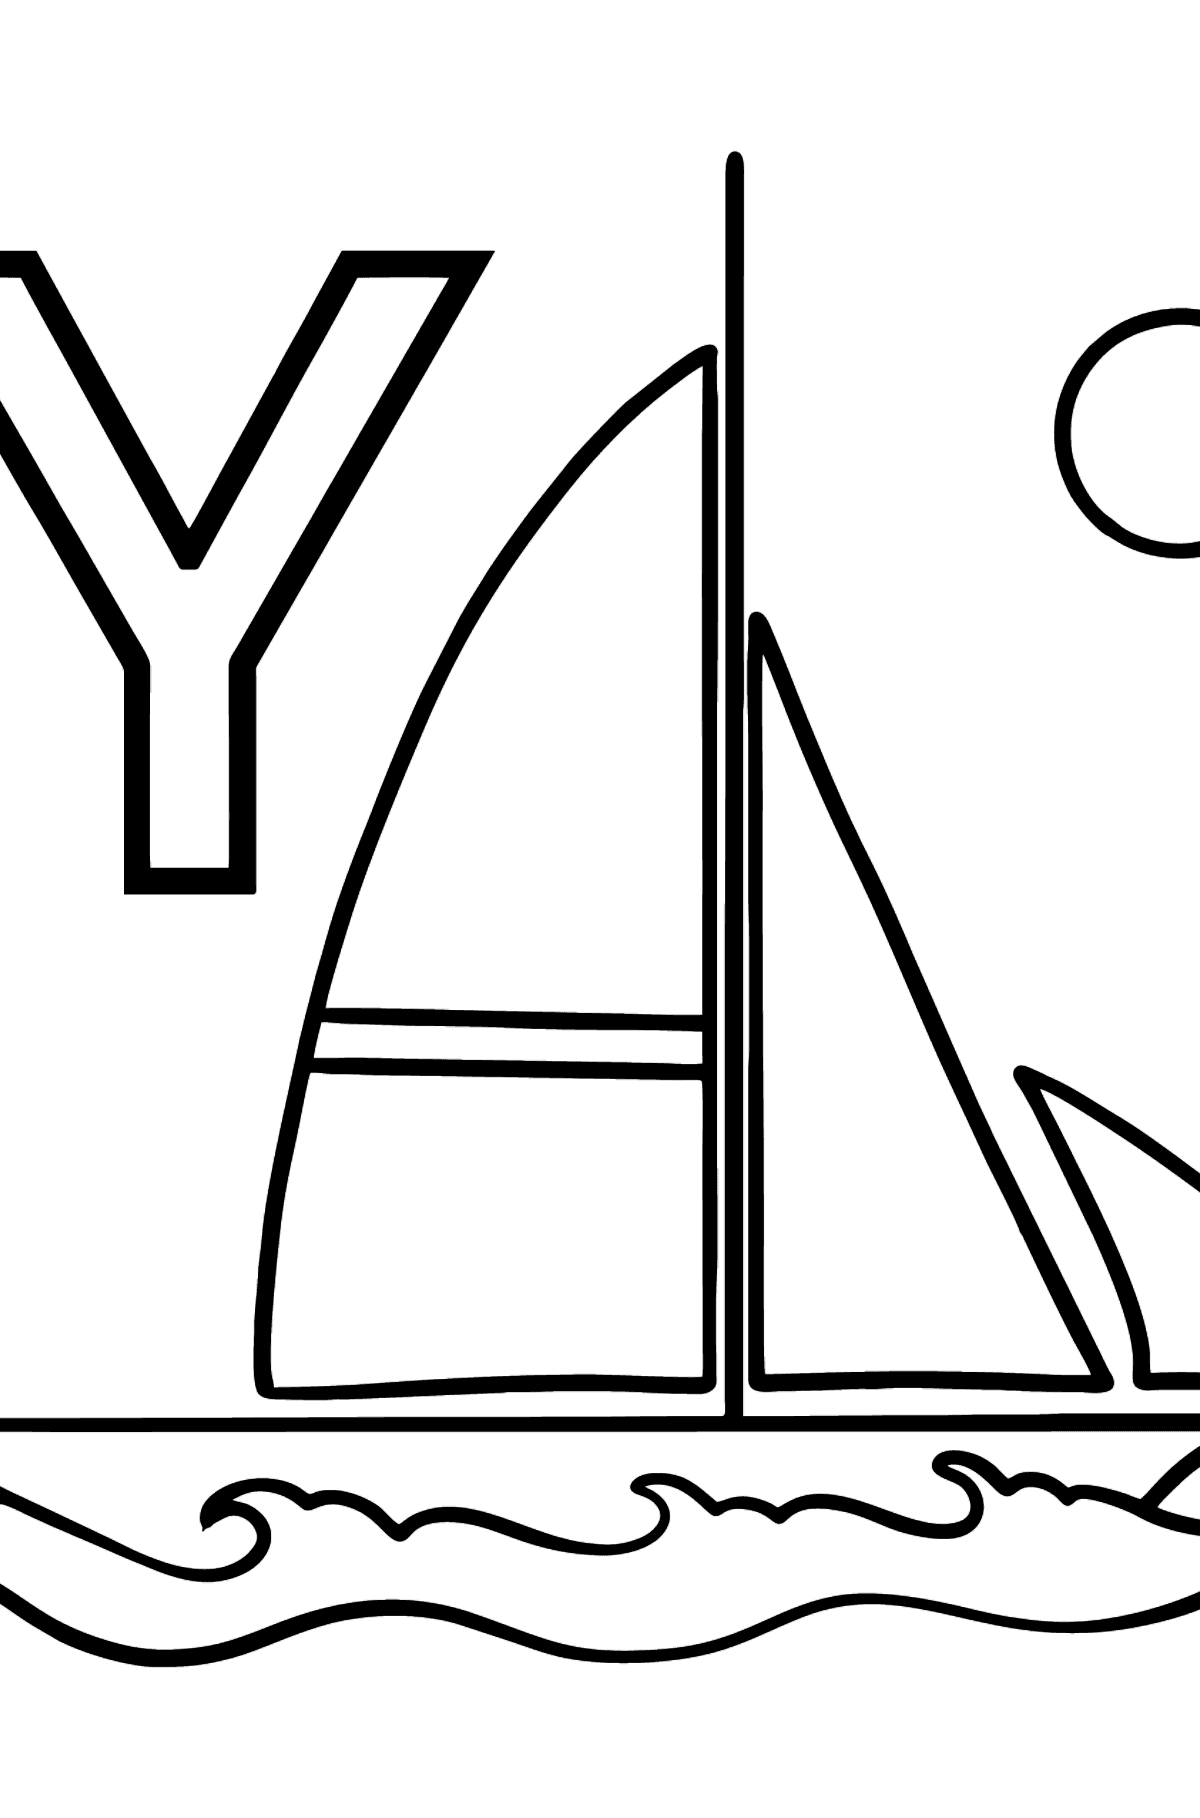 Ausmalbild Spanischer Buchstabe Y - YATE - Malvorlagen für Kinder